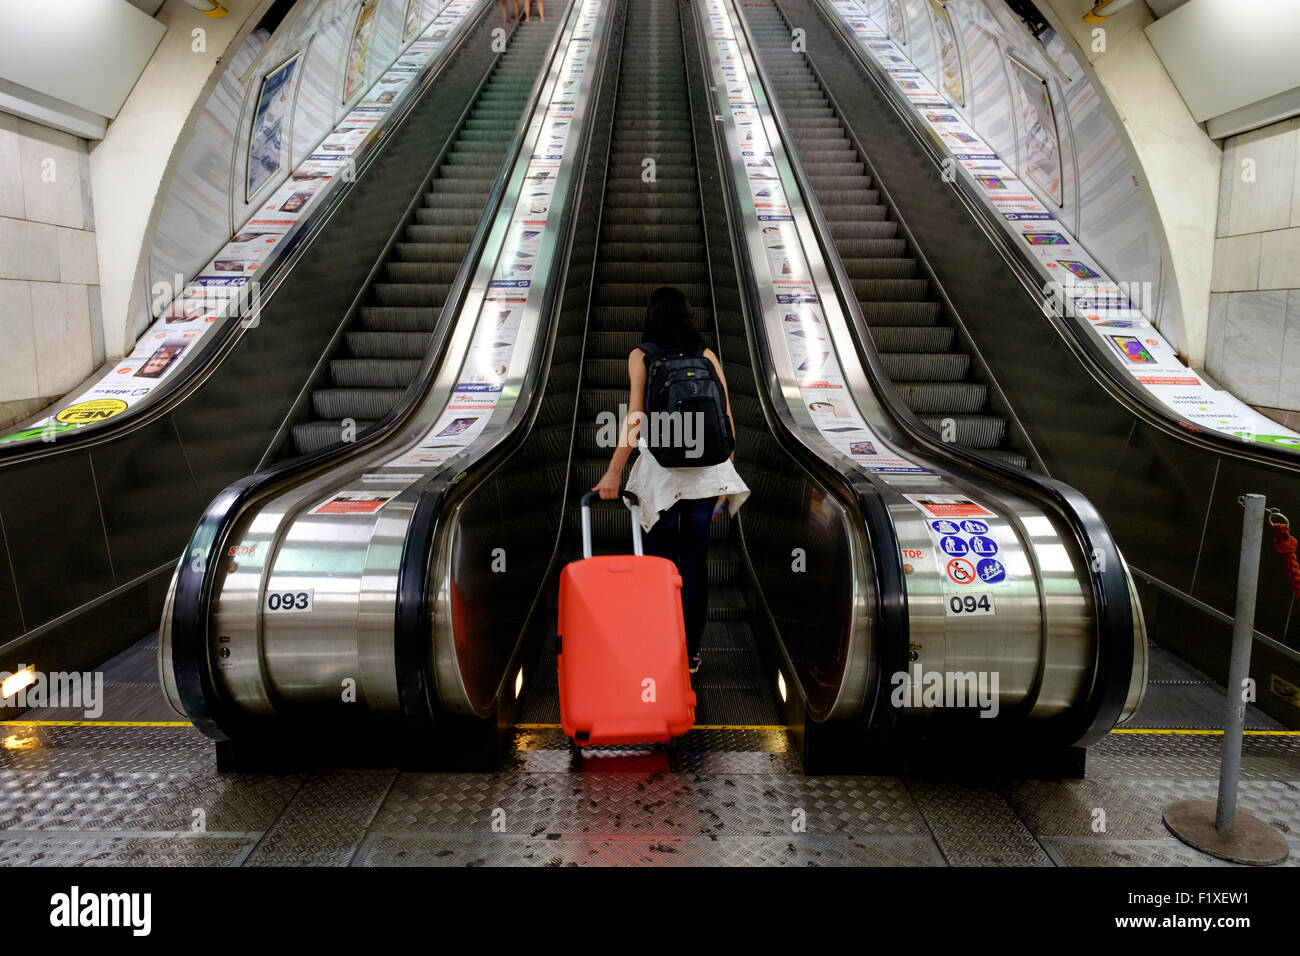 Rückansicht einer Person mit einem roten rollenden Koffer auf einer Rolltreppe hinauf Stockfoto